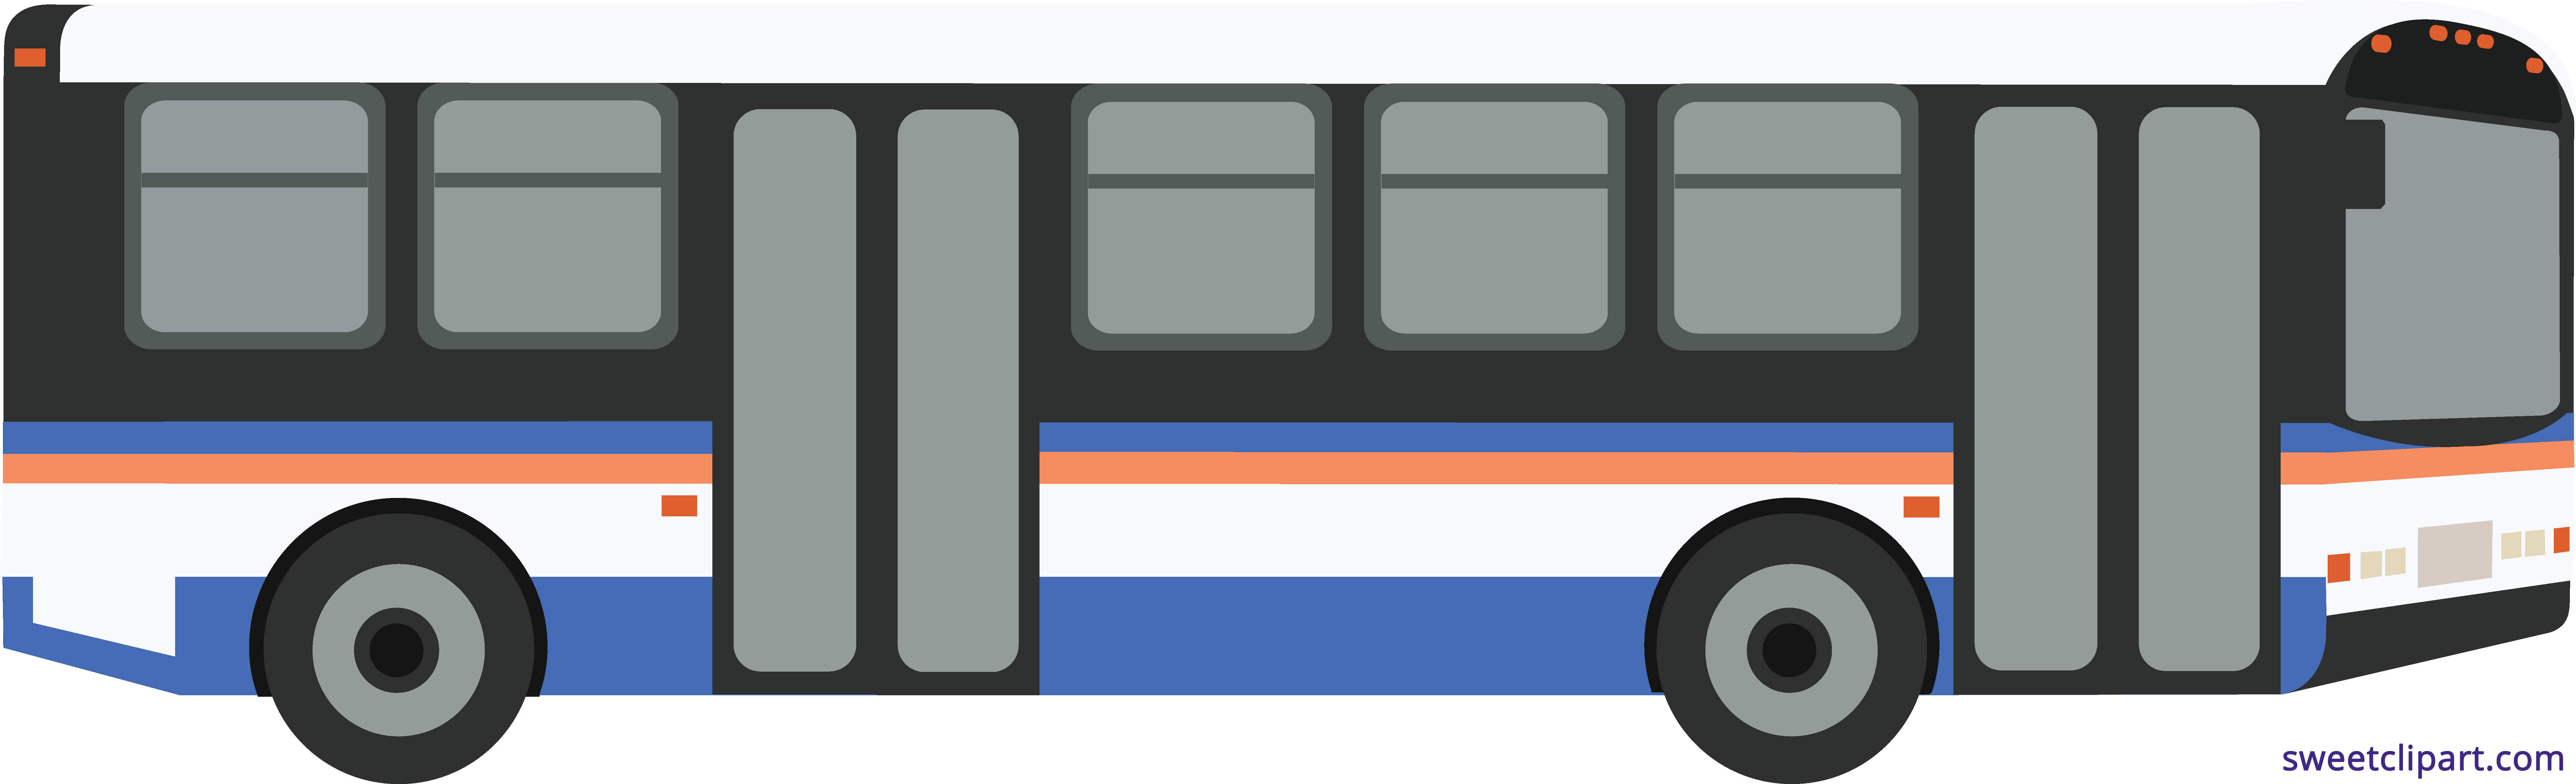 Bus Public Transit Clipart